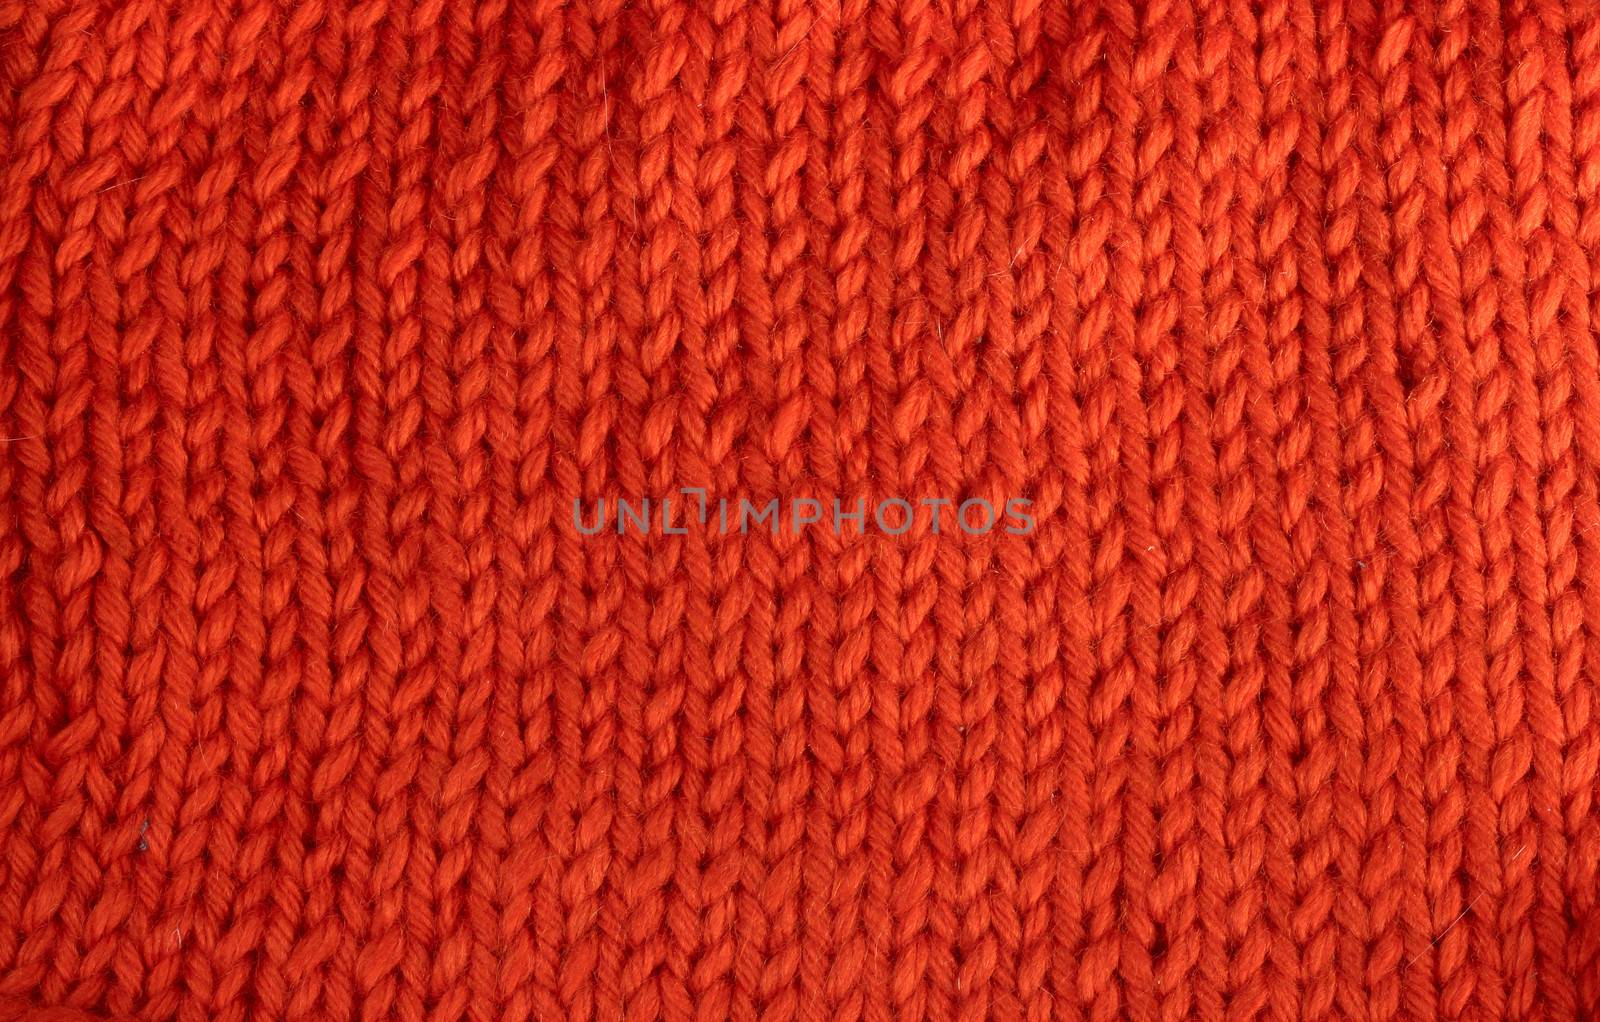 Wool knitted textured background by destillat